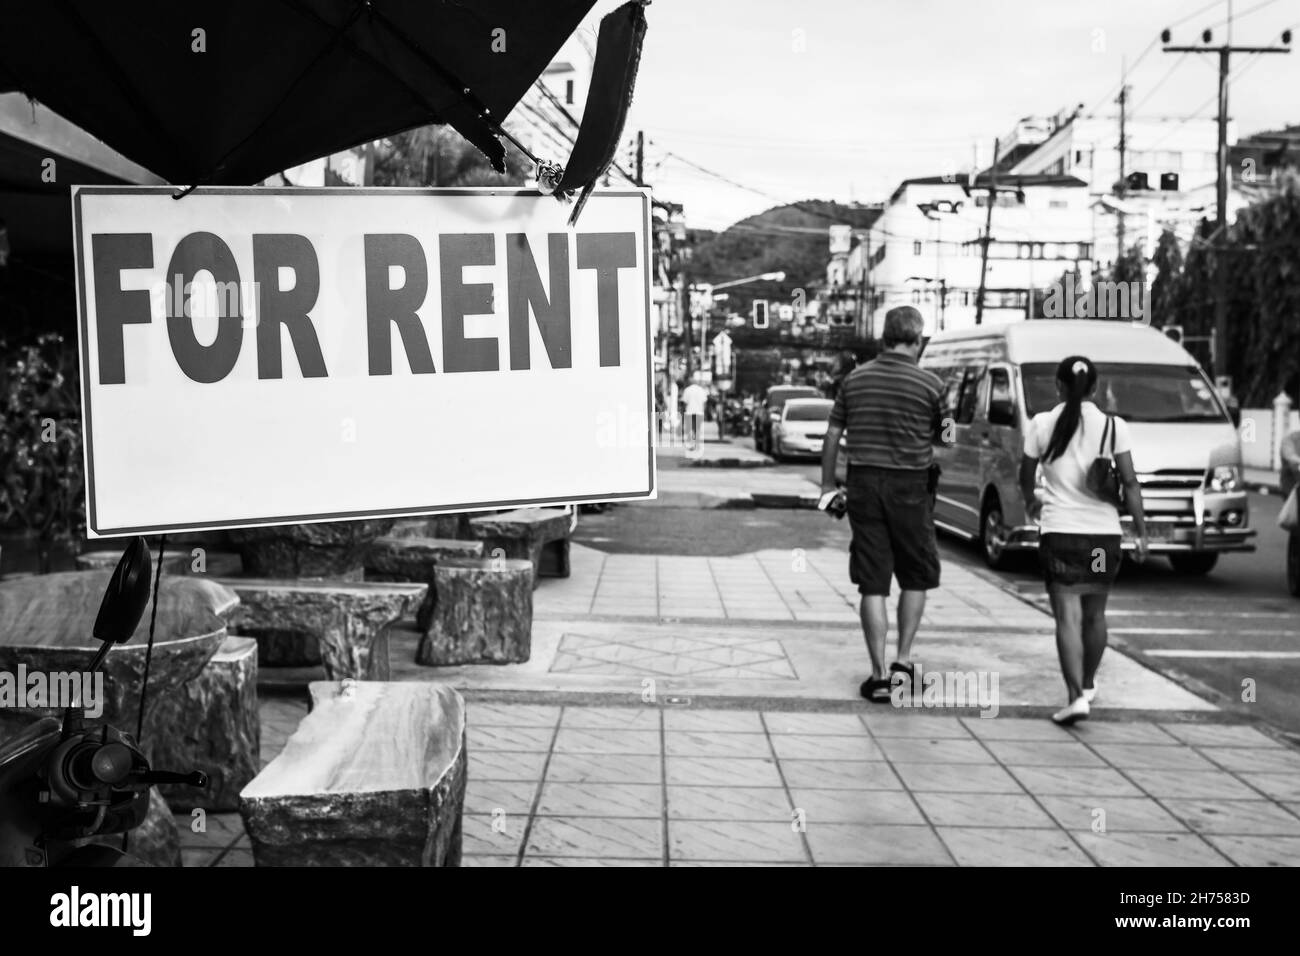 Vermieten Zeichen in der Straße, Thailand. Schwarz-Weiß-Stadtfotografie, flacher Freiheitsgrad, Fokus auf dem Schild Stockfoto